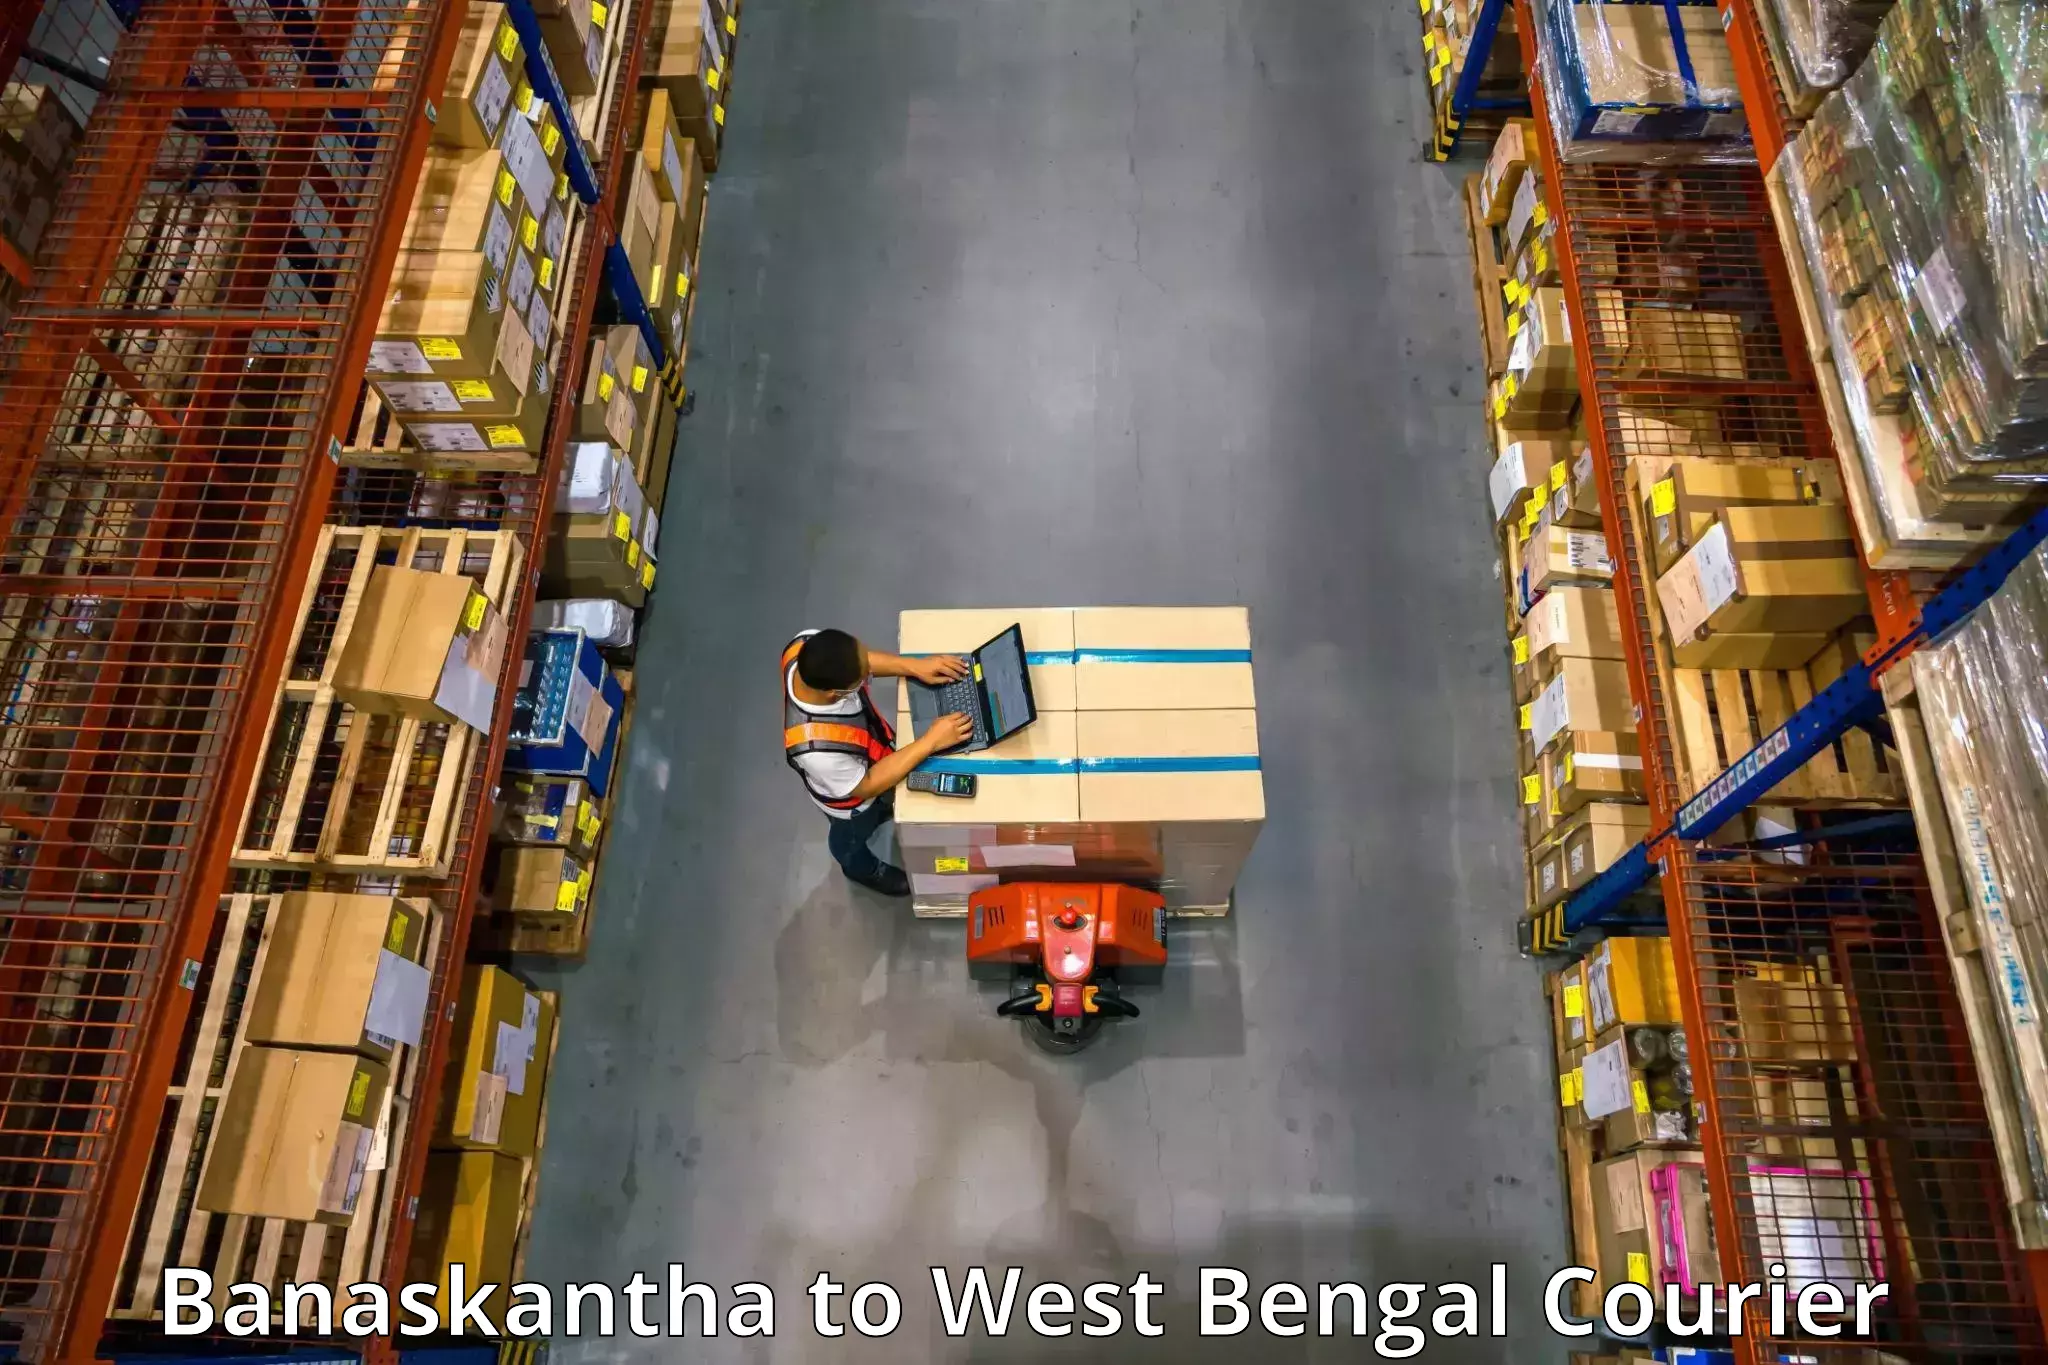 Professional movers and packers Banaskantha to Hanskhali